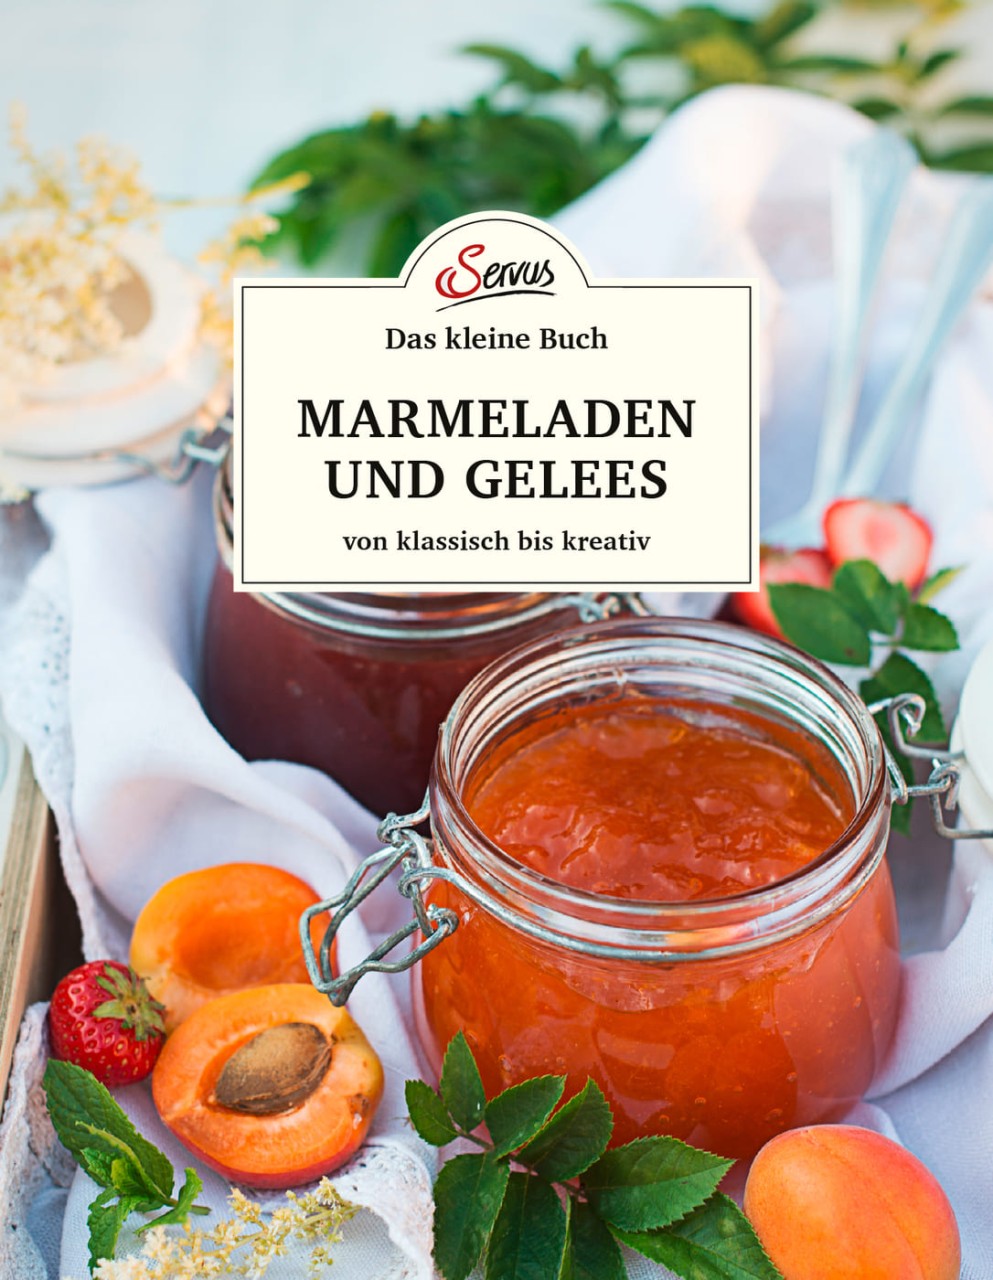 Das kleine Buch: Marmeladen und Gelees von klassisch bis kreativ von Servus Verlag